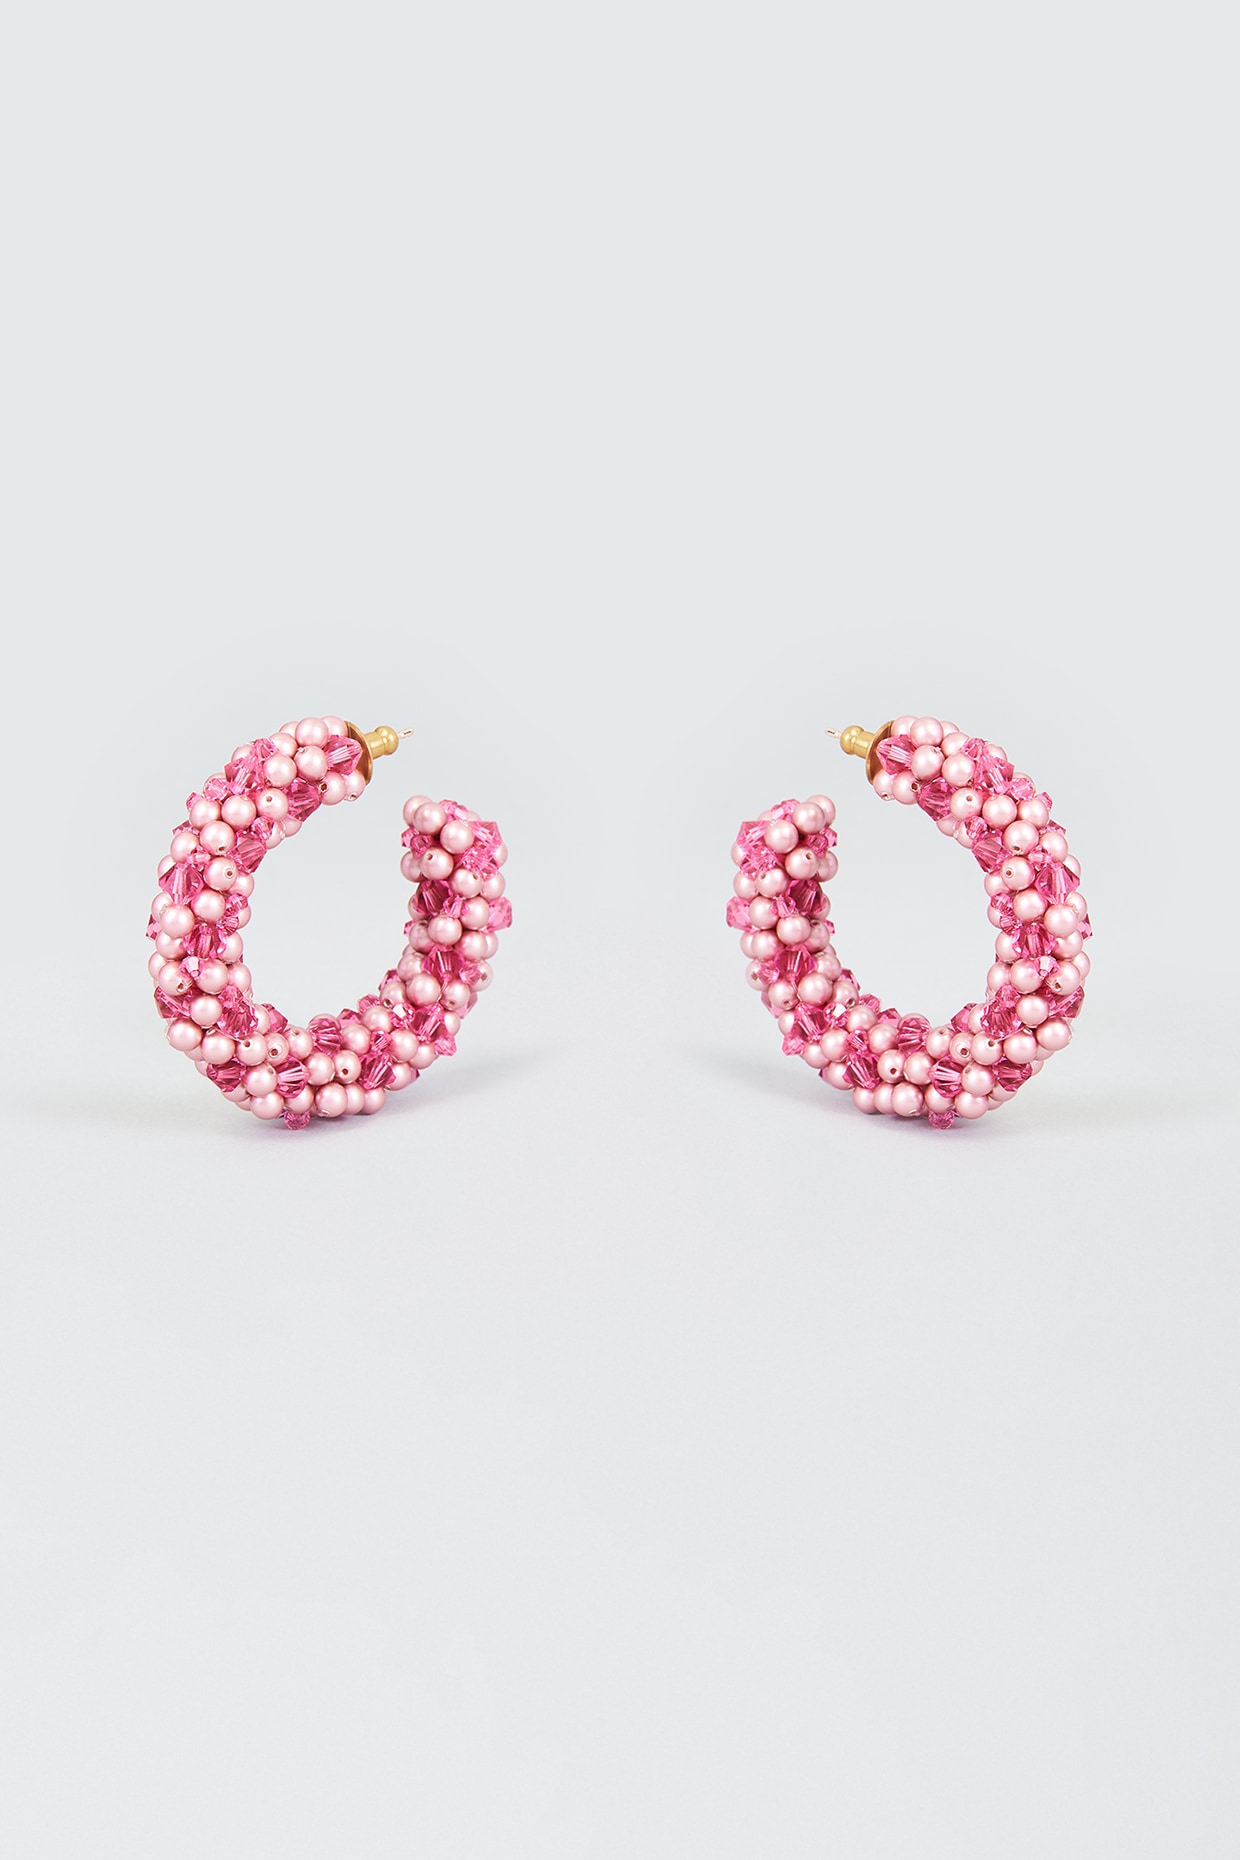 Swarovski Ortyx Hoop Earrings Triangle Cut Pink Rose GoldTone Plated   Jones Bros Jewelers